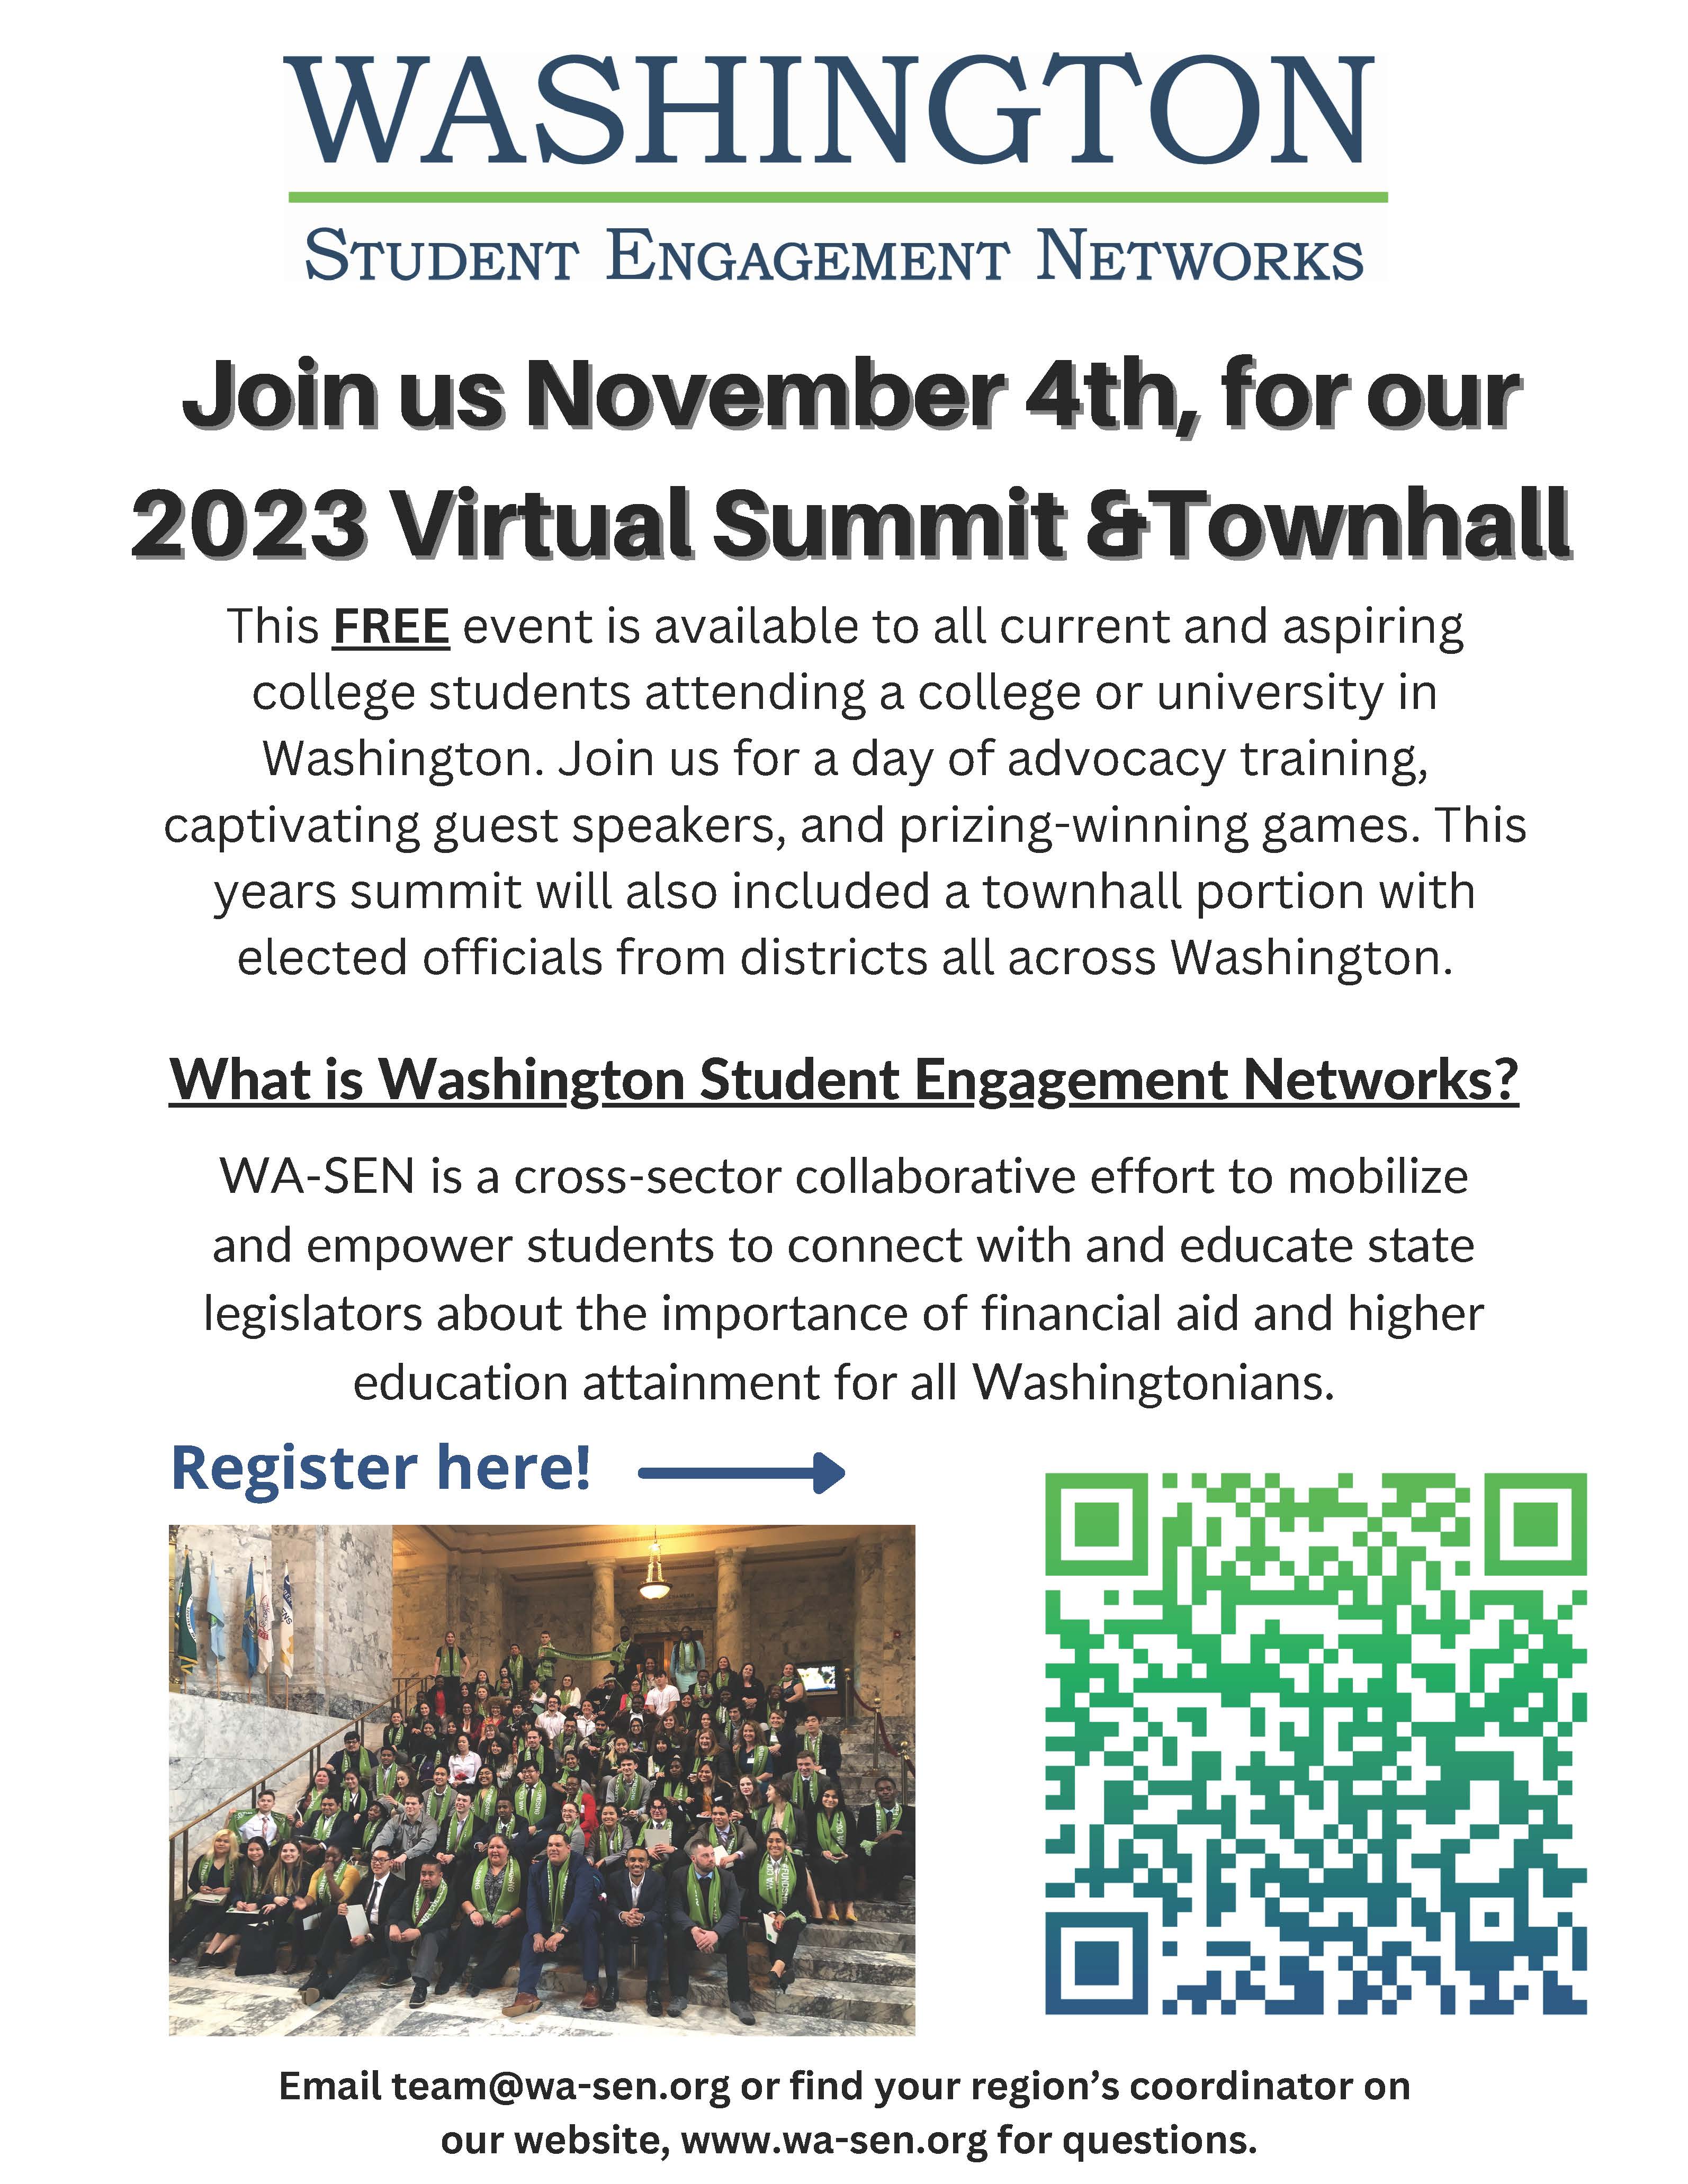 Washington Student Engagement Networks